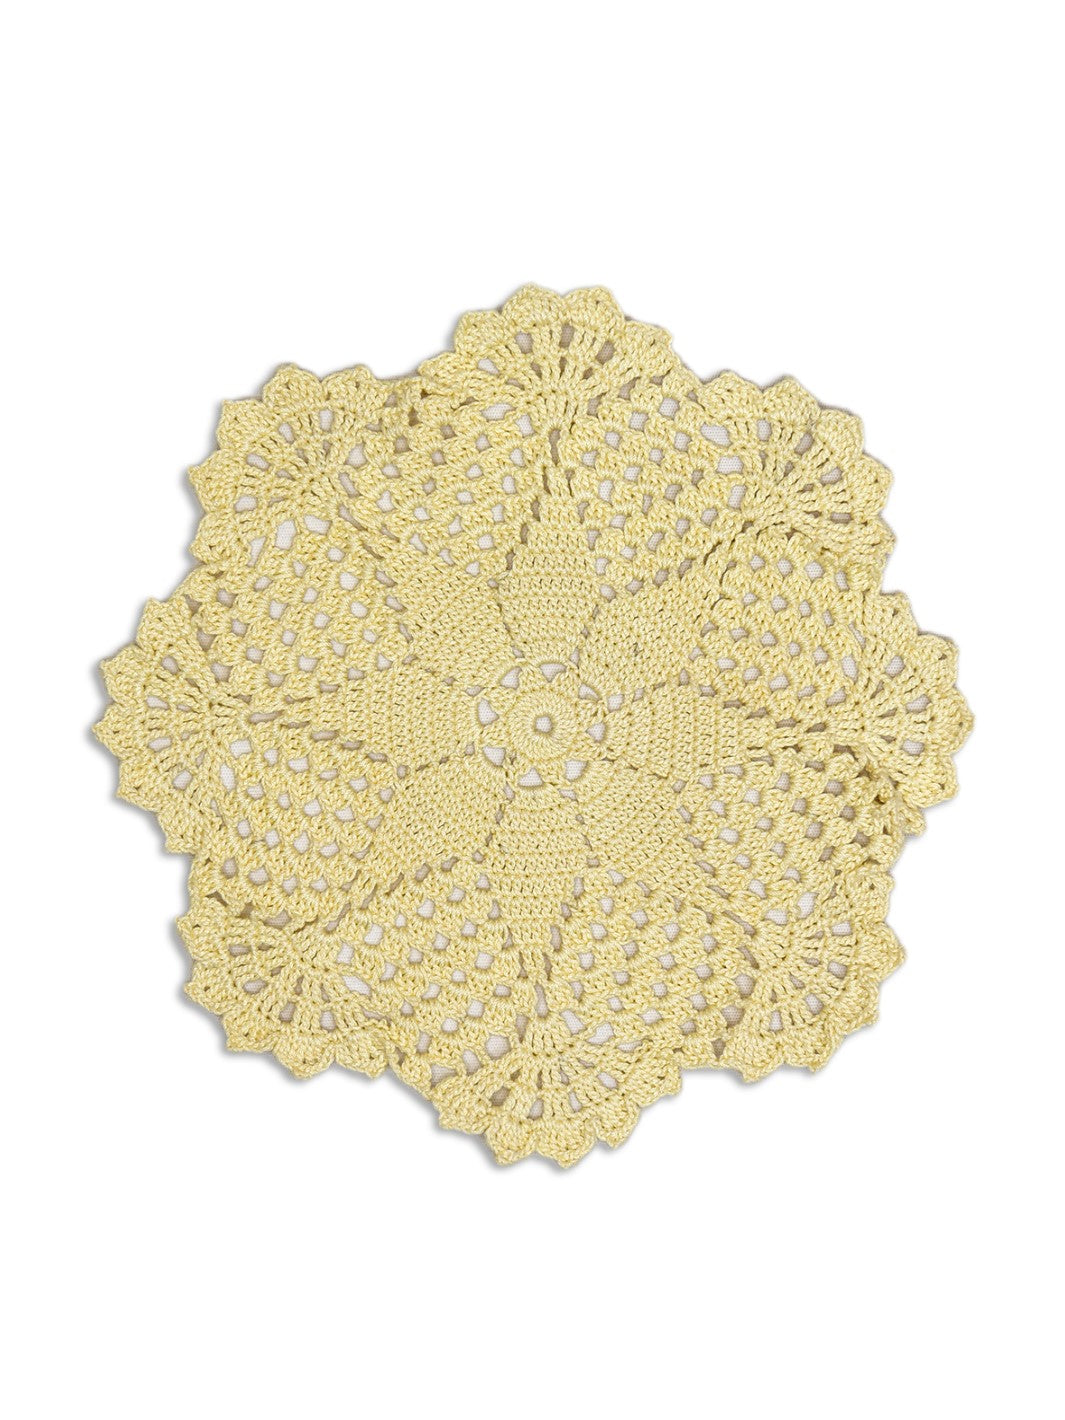 Handmade Crochet Doilies- Cream